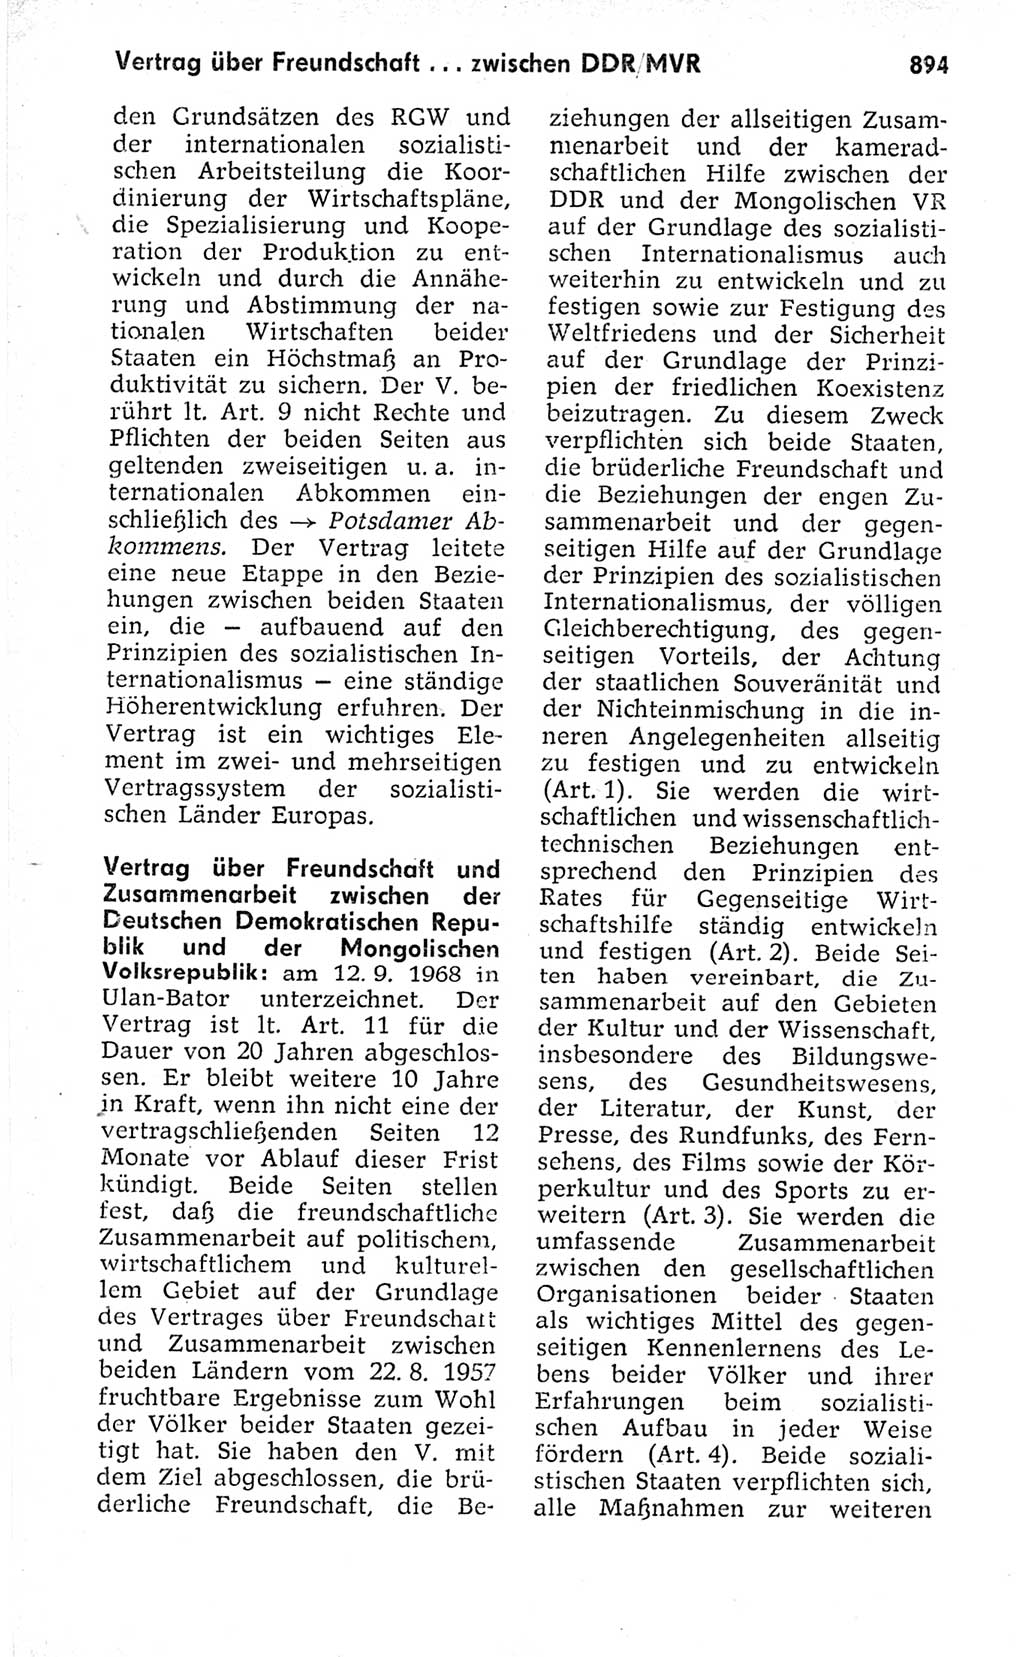 Kleines politisches Wörterbuch [Deutsche Demokratische Republik (DDR)] 1973, Seite 894 (Kl. pol. Wb. DDR 1973, S. 894)